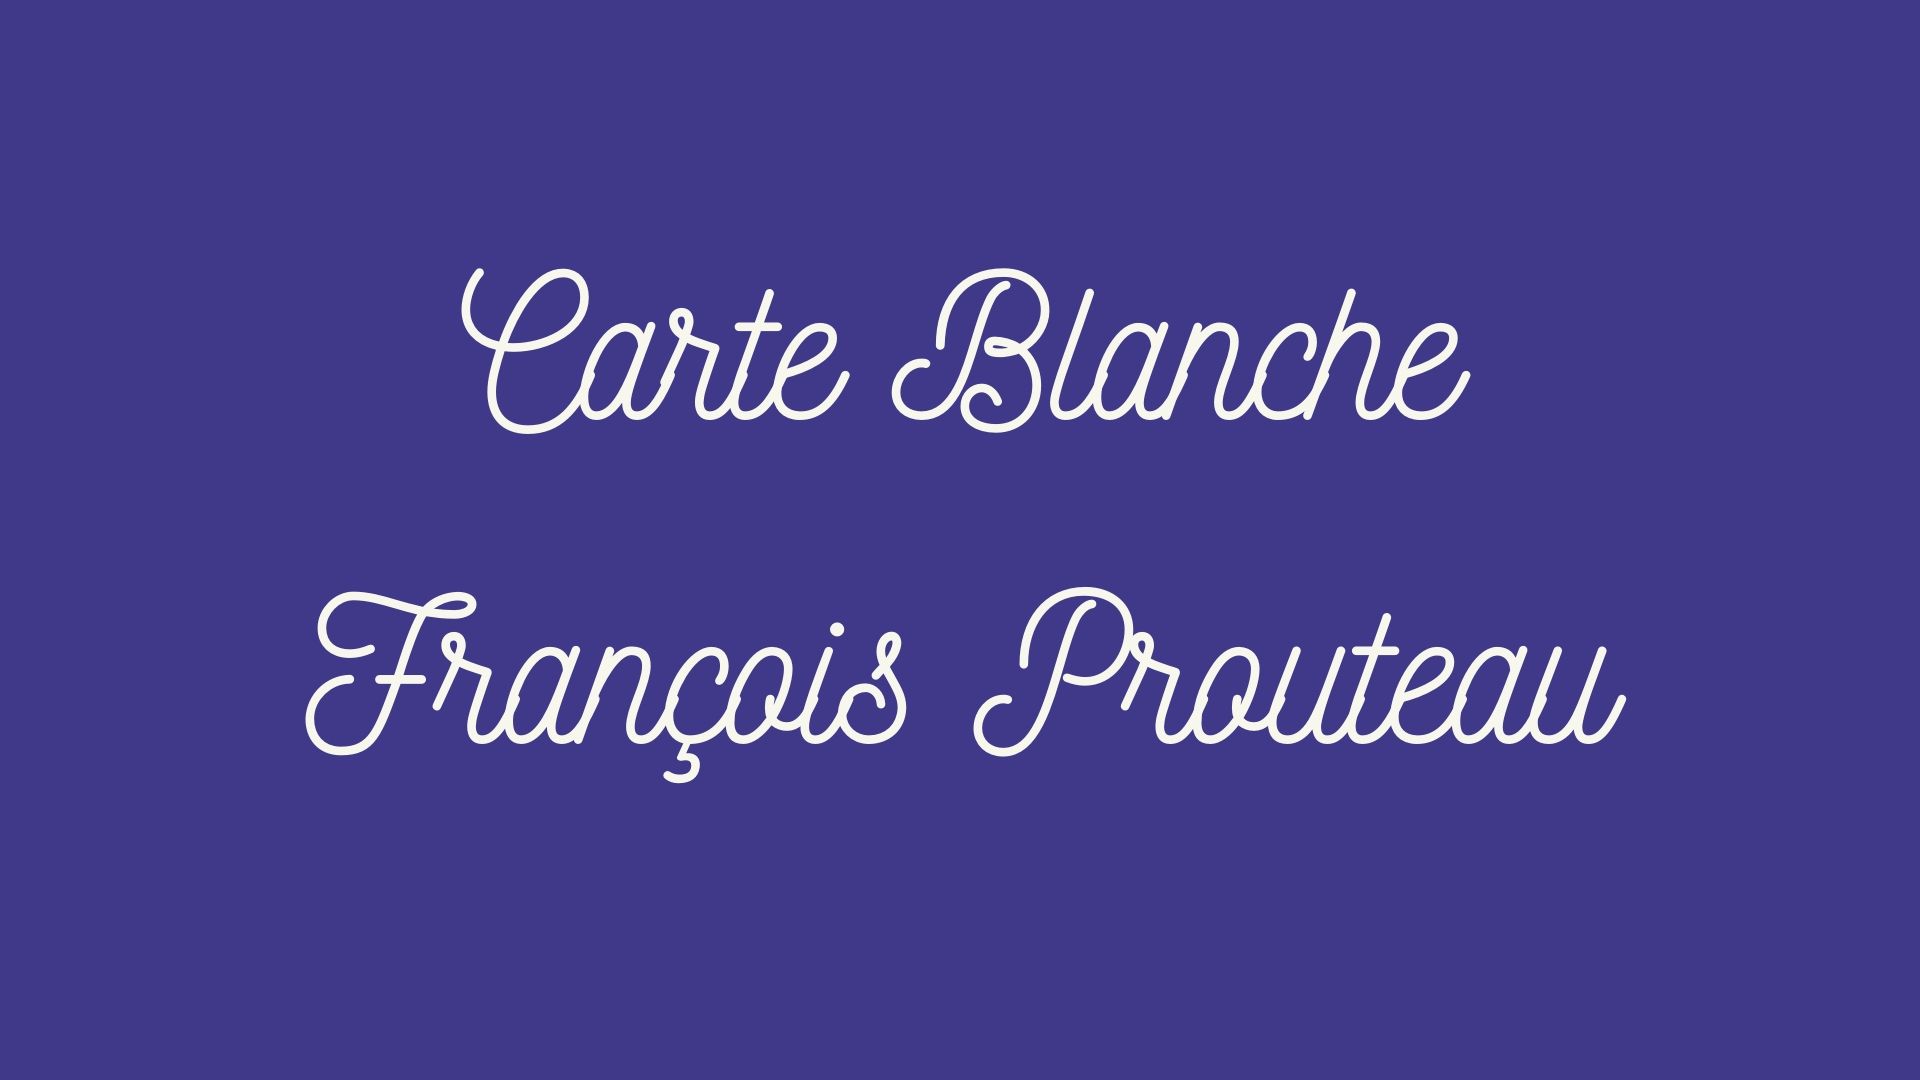 En este momento estás viendo La última carta blanca de François Prouteau.